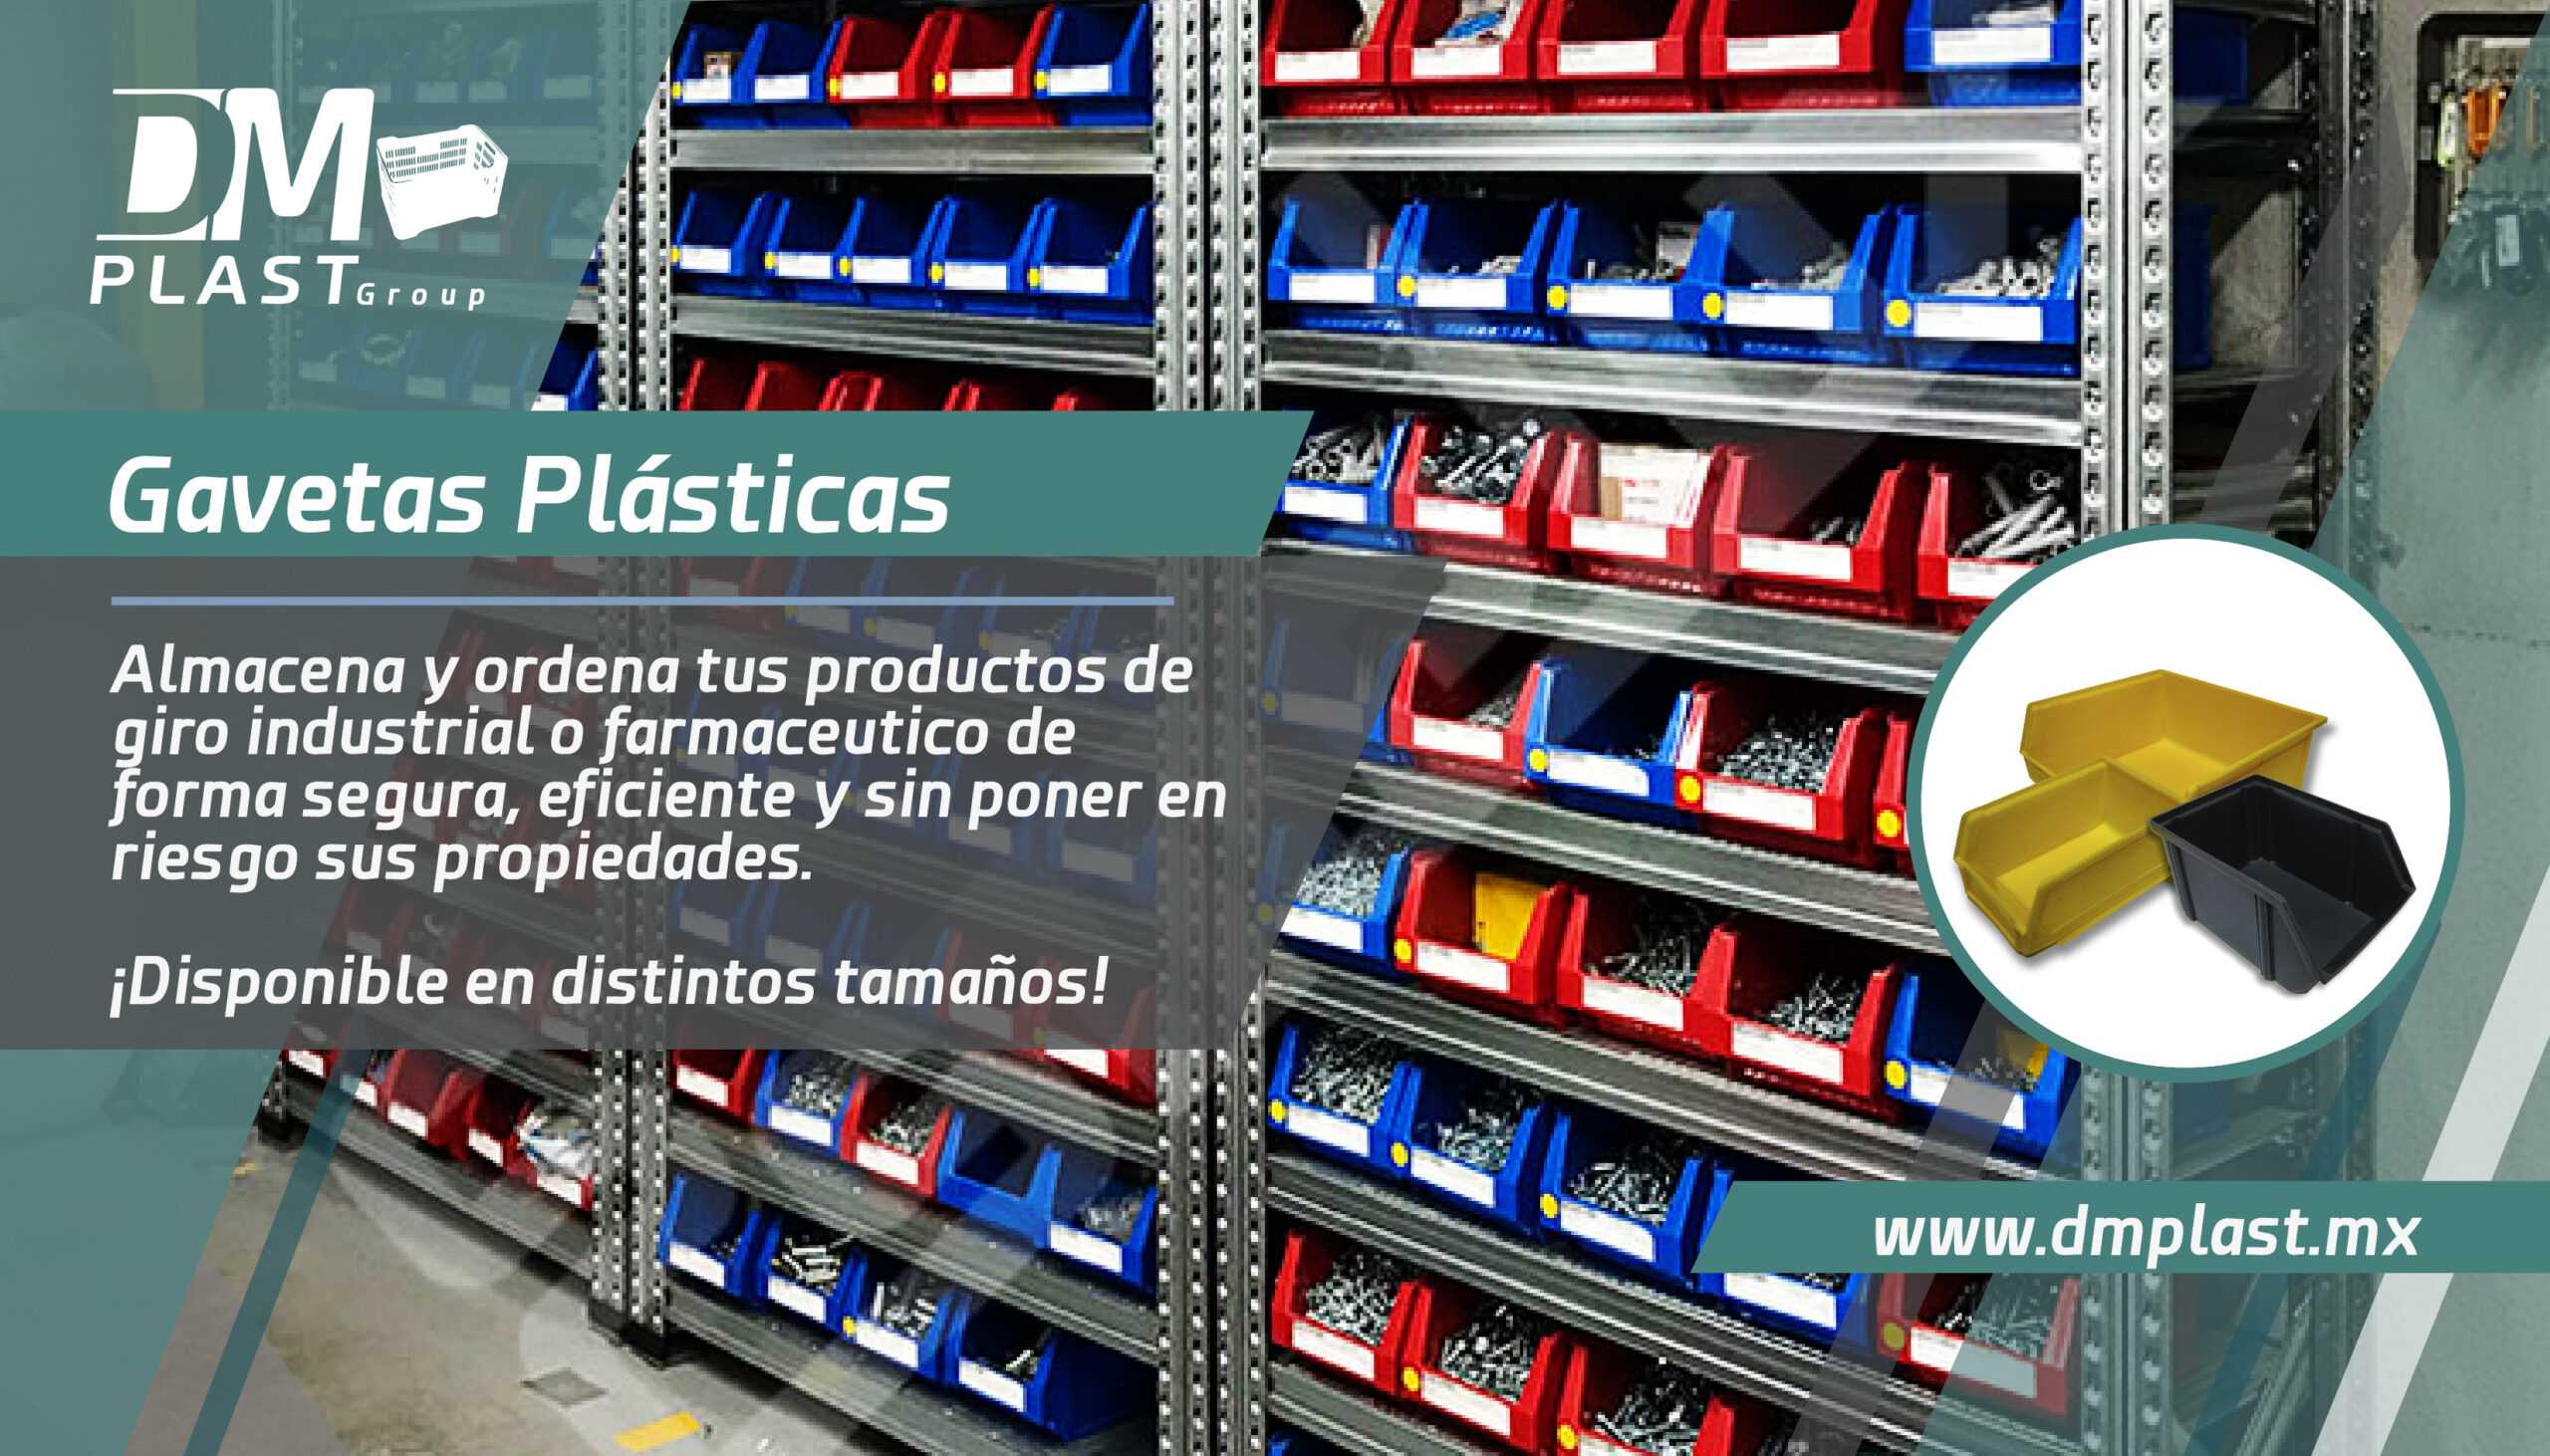 Con las Gavetas plásticas organiza tus espacios en almacén!